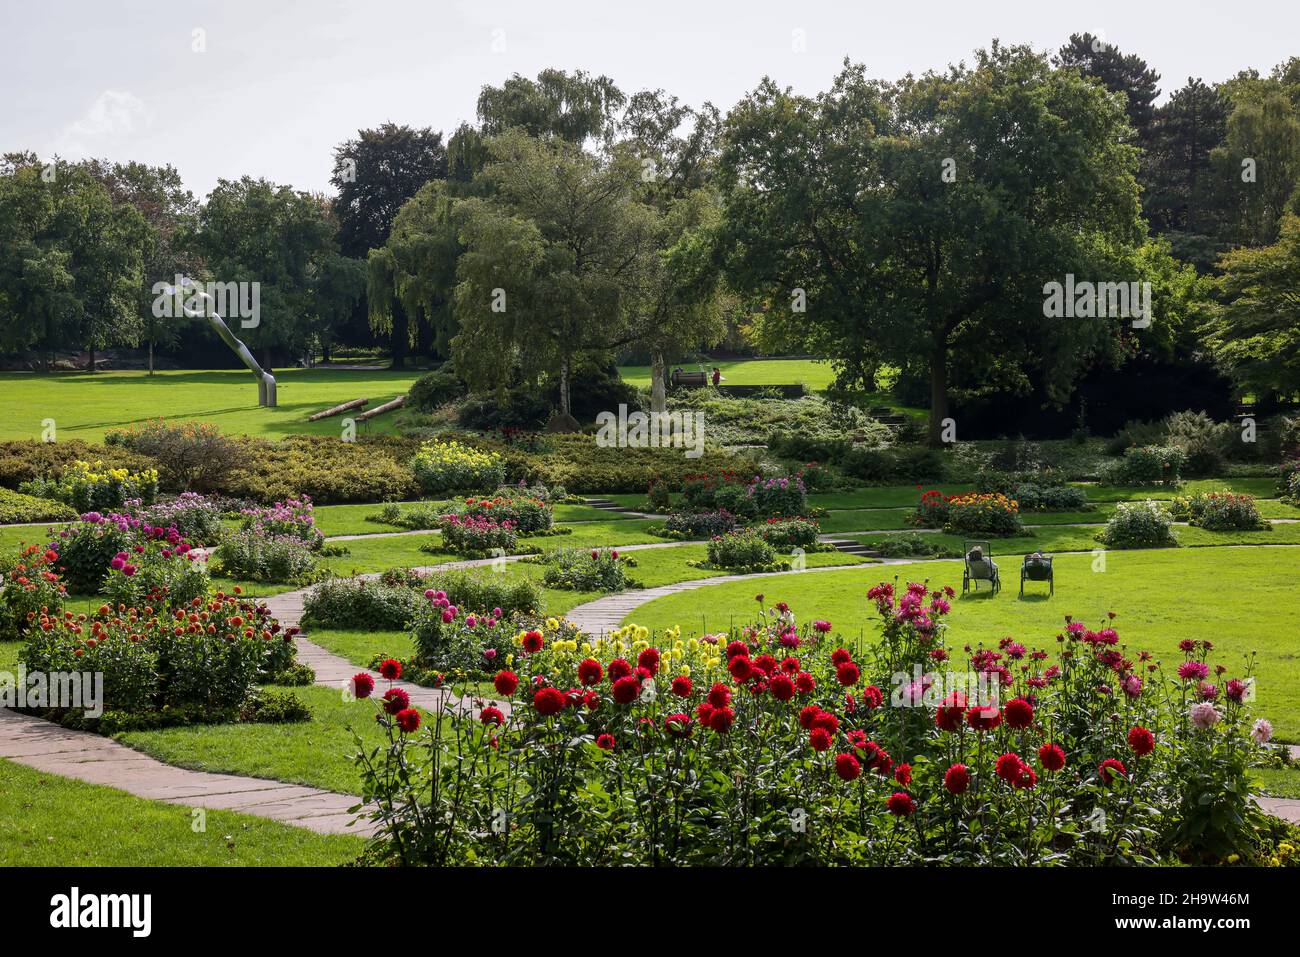 '21.09.2021, Germany, North Rhine-Westphalia, Essen - Grugapark, a park in Essen, originated from the first Grossen Ruhrlaendischen Gartenbau-Ausstell Stock Photo